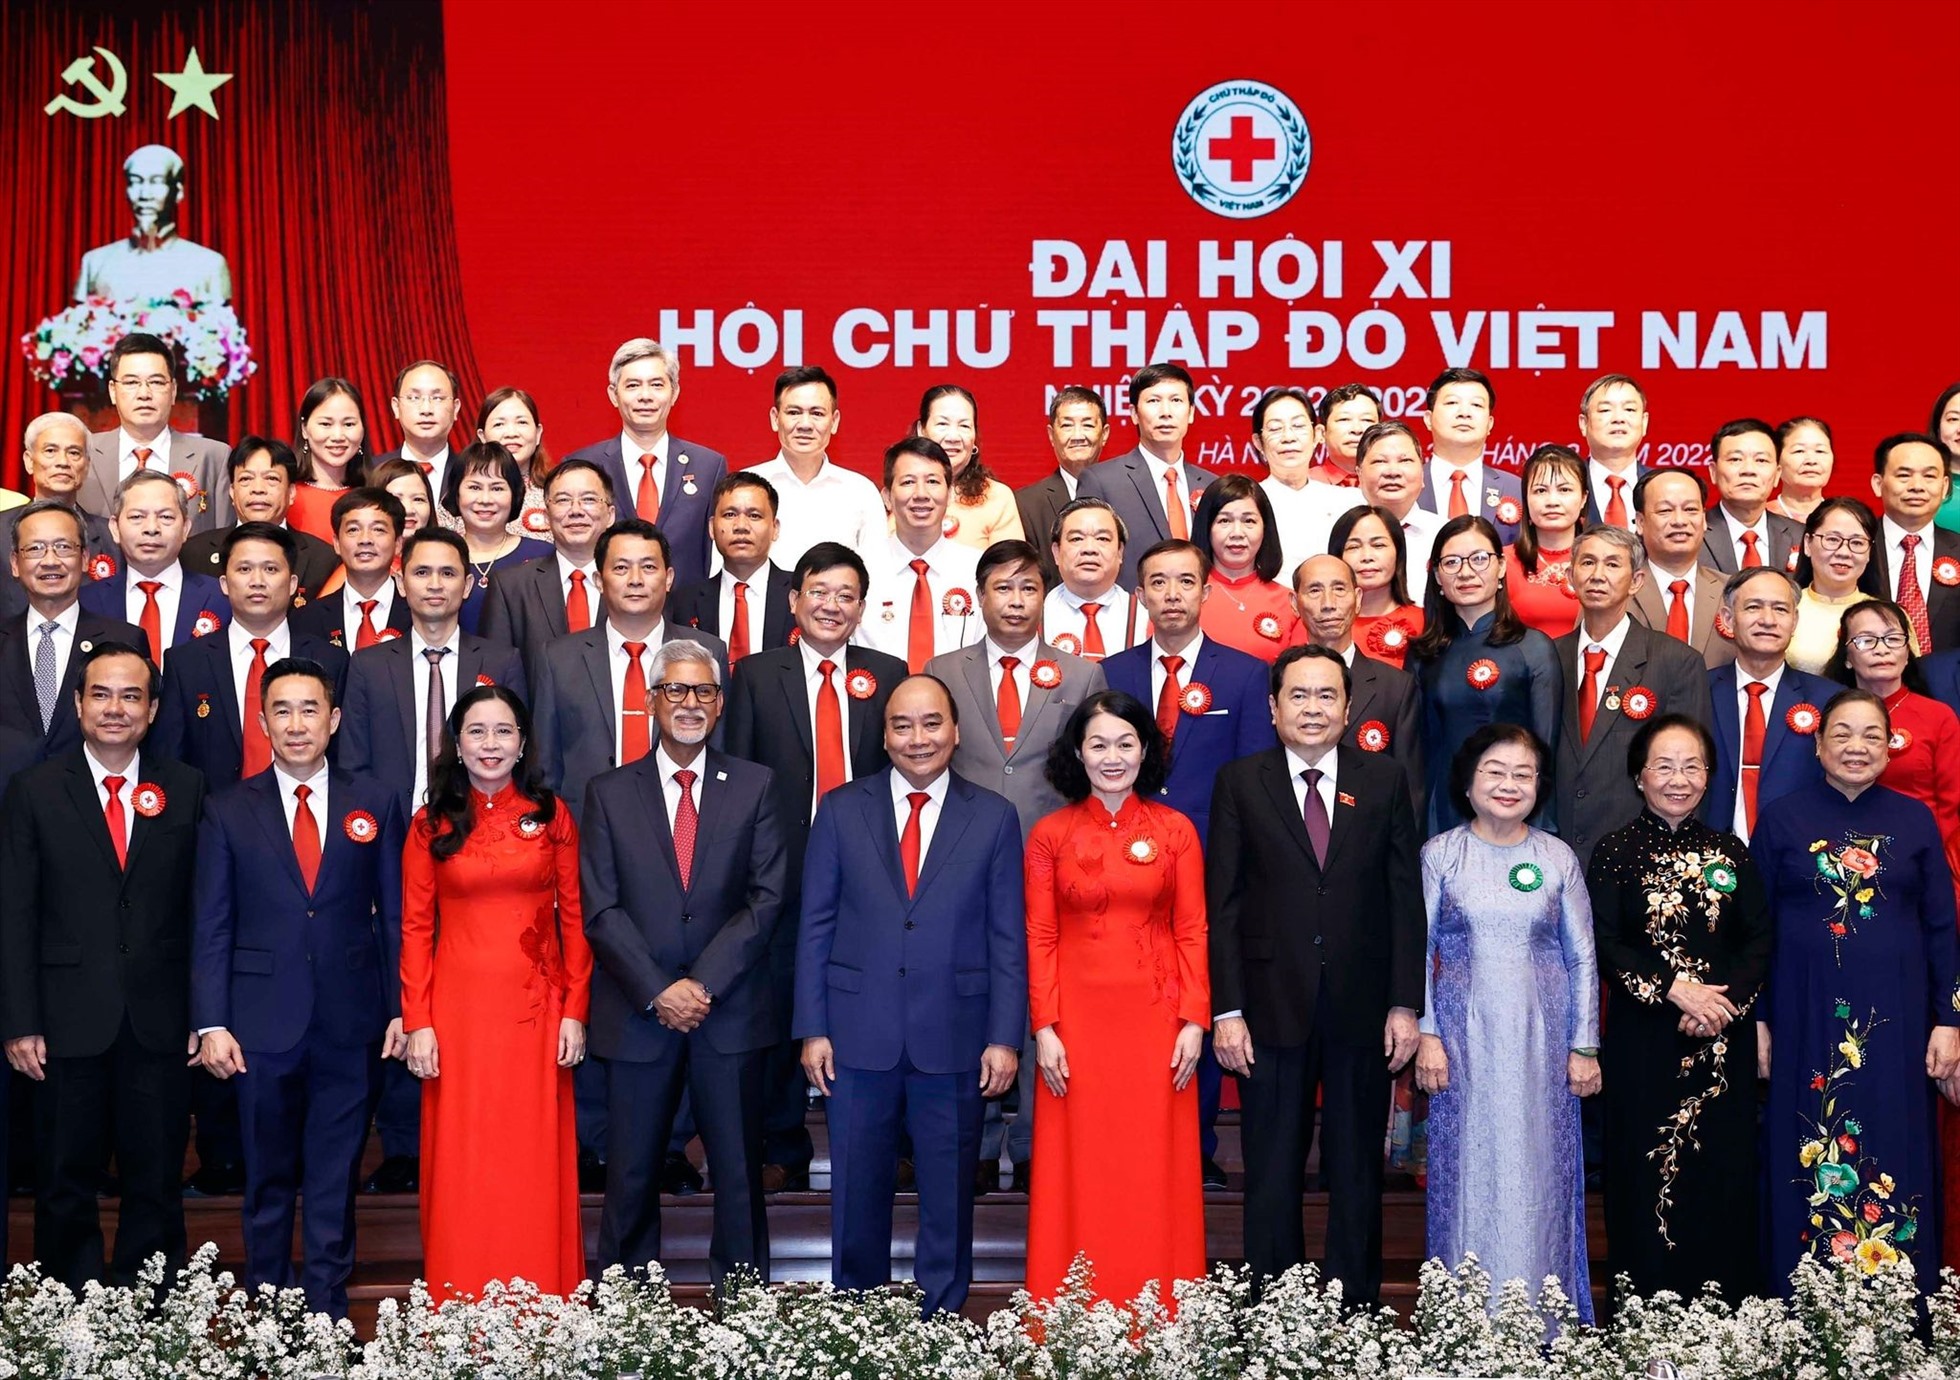 Chủ tịch nước làm Chủ tịch danh dự Hội Chữ thập đỏ Việt Nam - Ảnh 2.